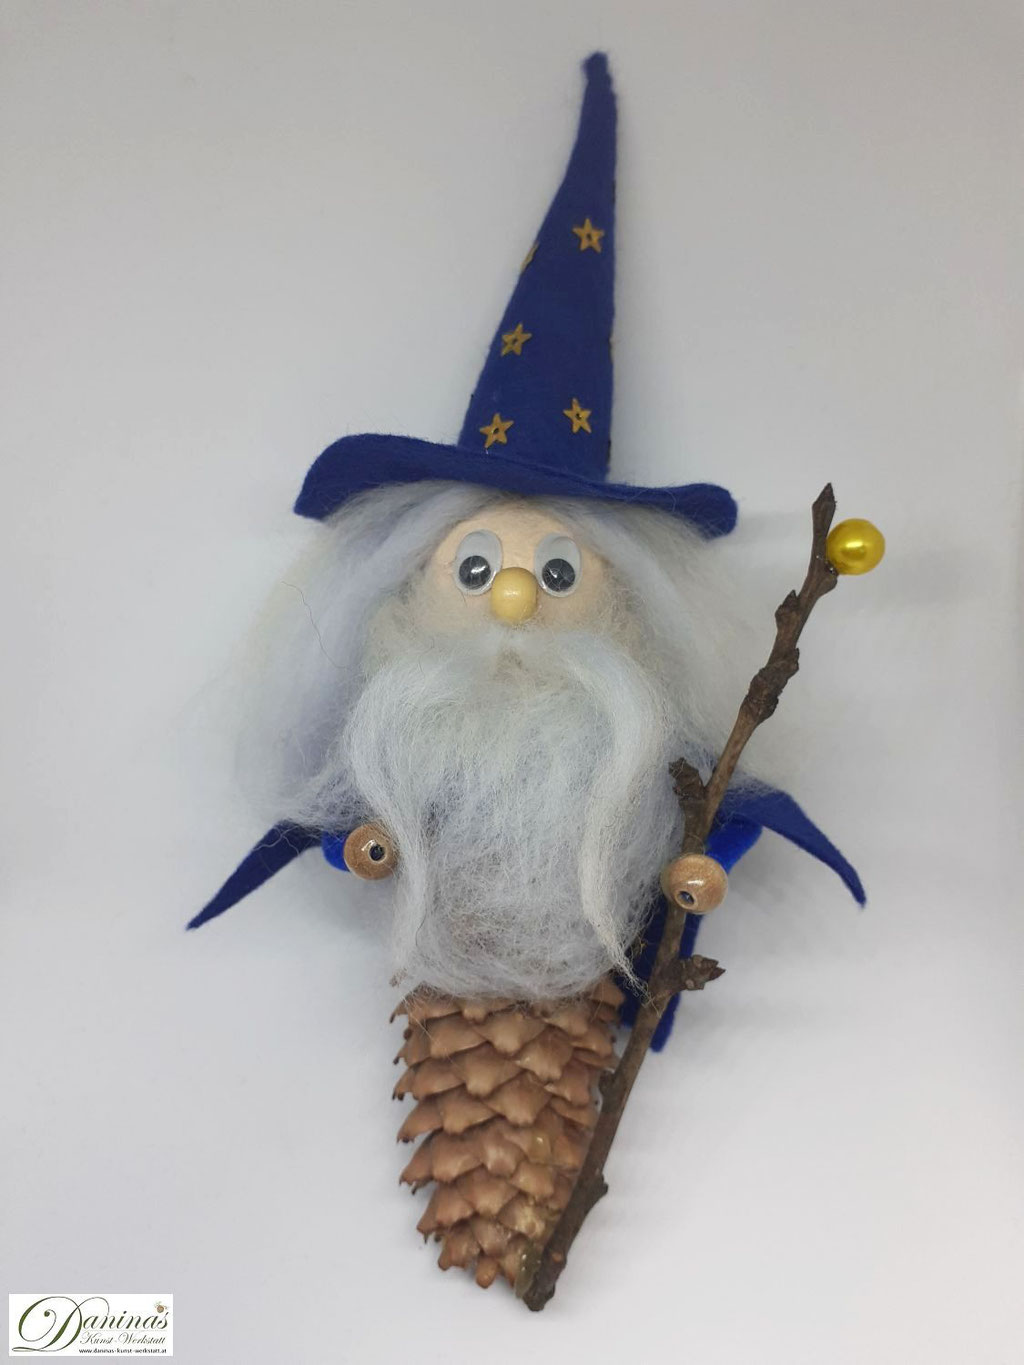 Zauberer Merlin jun. Handgefertigte Märchenfigur aus Fichtenzapfen, mit weißen Haaren und langem Bart aus Wolle, blauem Zauberhut und Zaubermantel, magischem Zauberstab